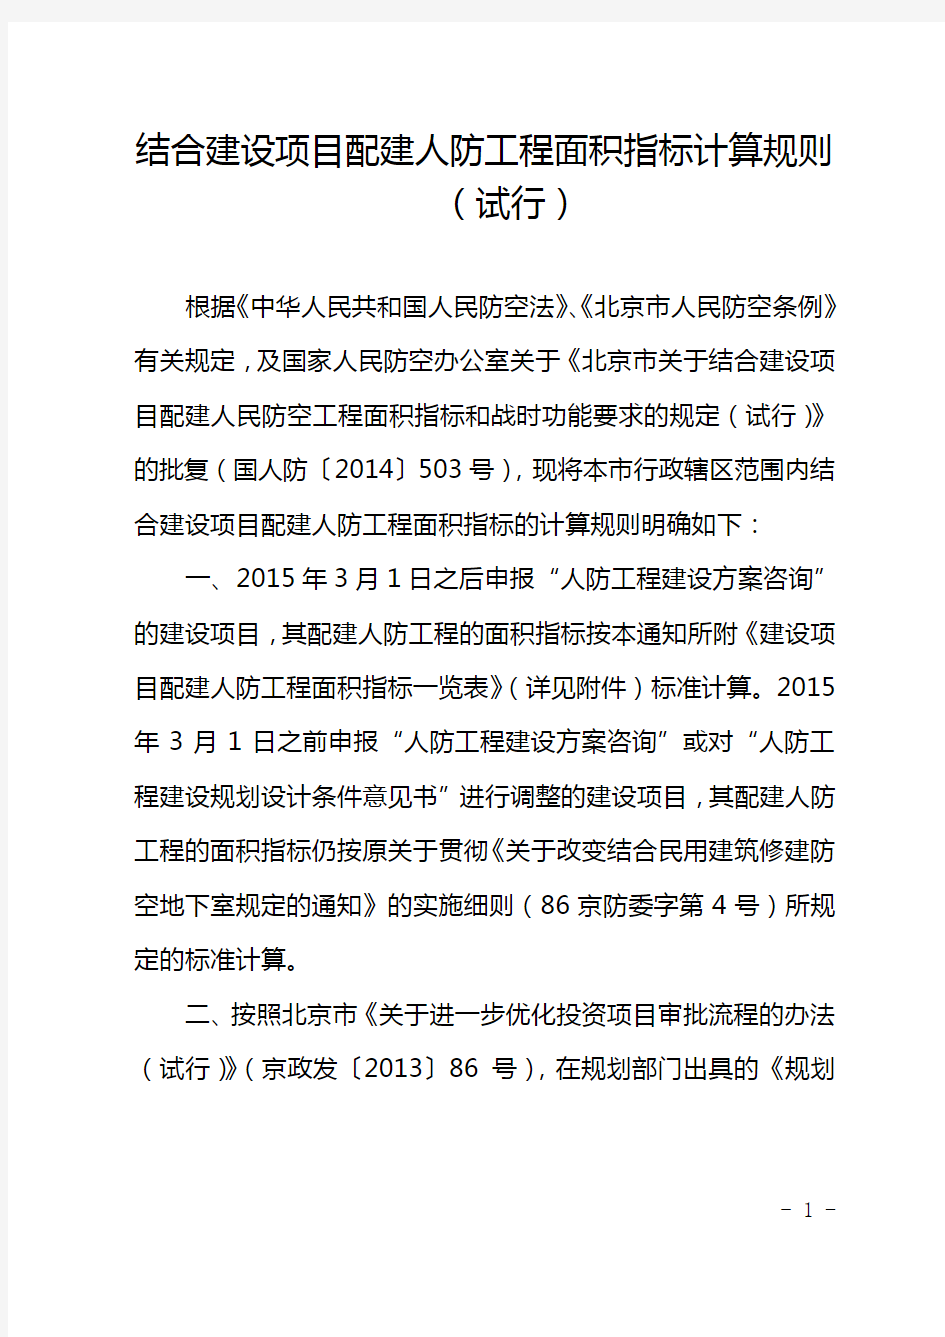 (北京)结合建设项目配建人防工程面积指标计算规则(试行)